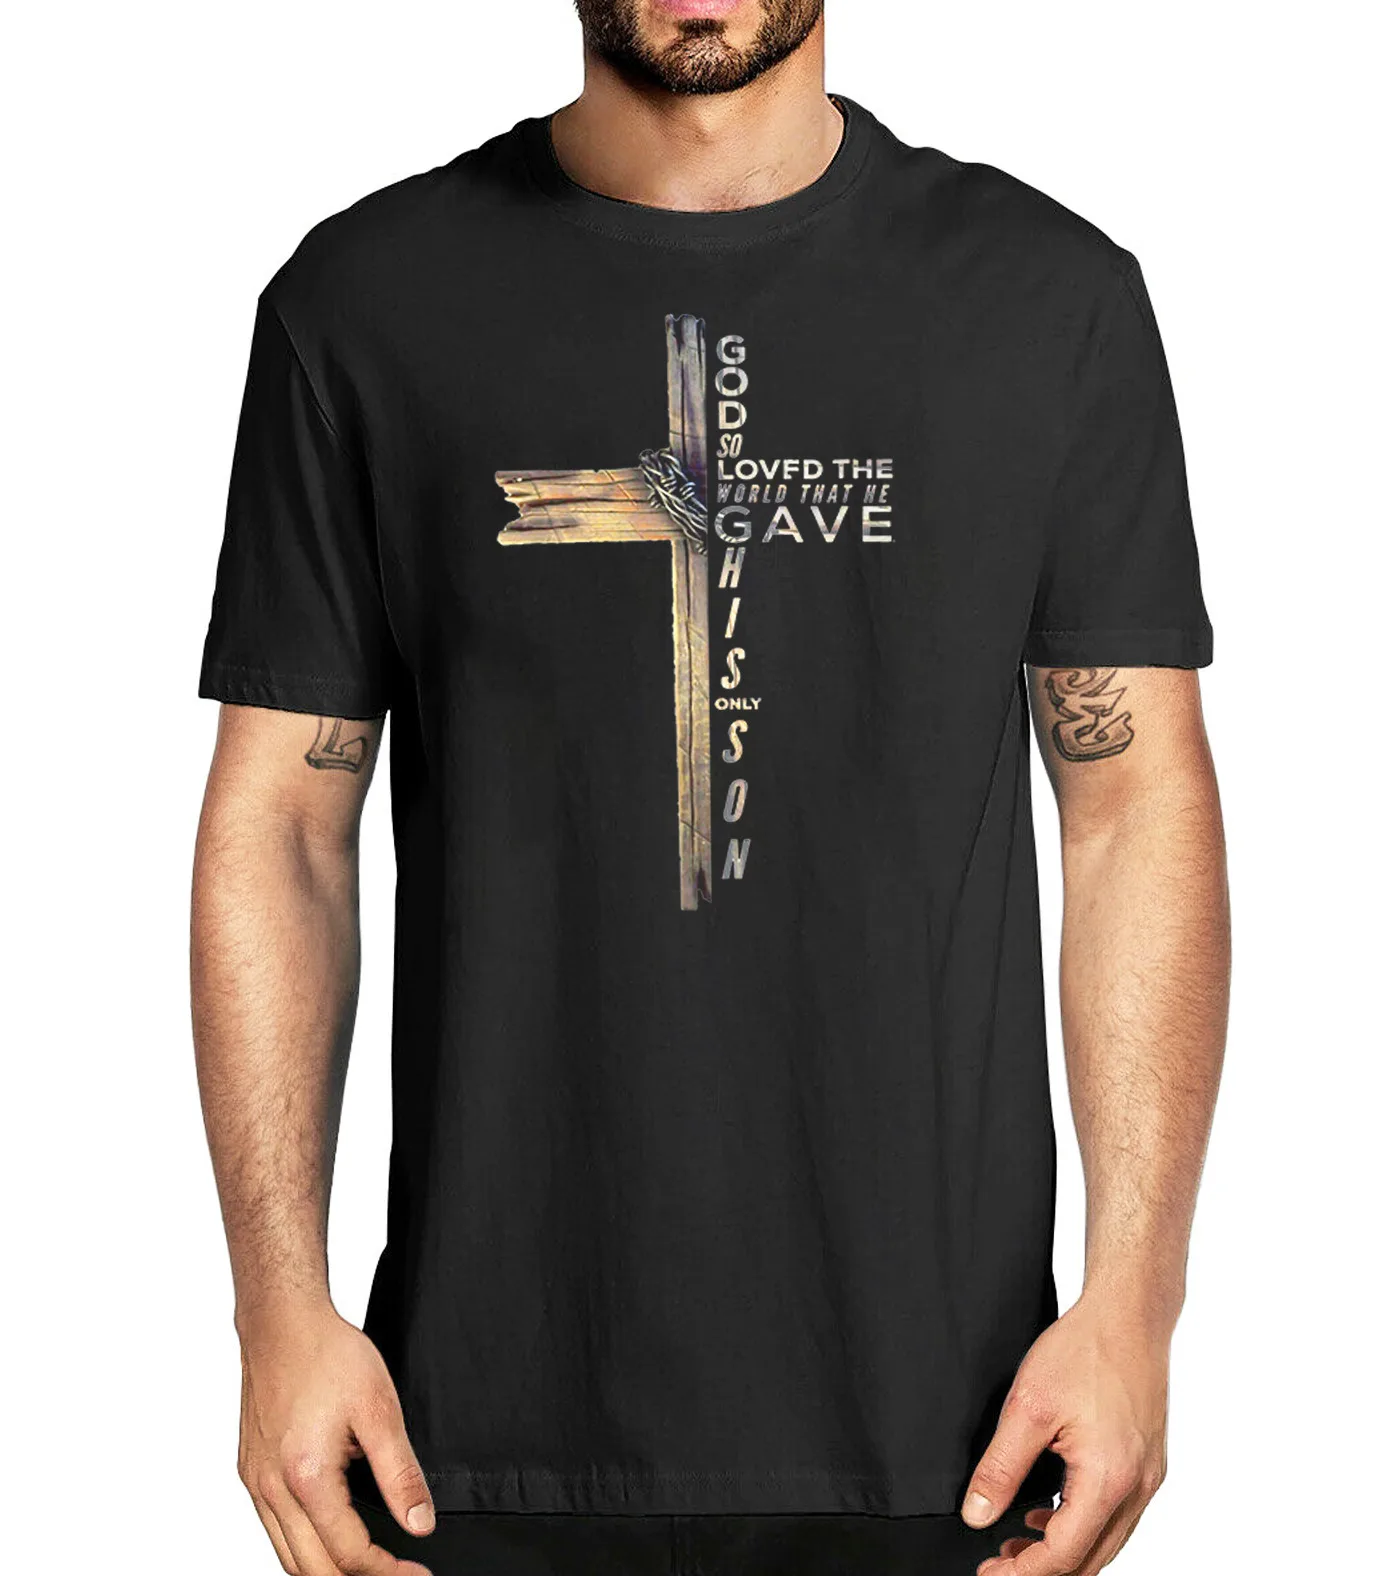 

Мужская хлопковая футболка с коротким рукавом, круглым вырезом и надписью на тему Библии, Джона 316